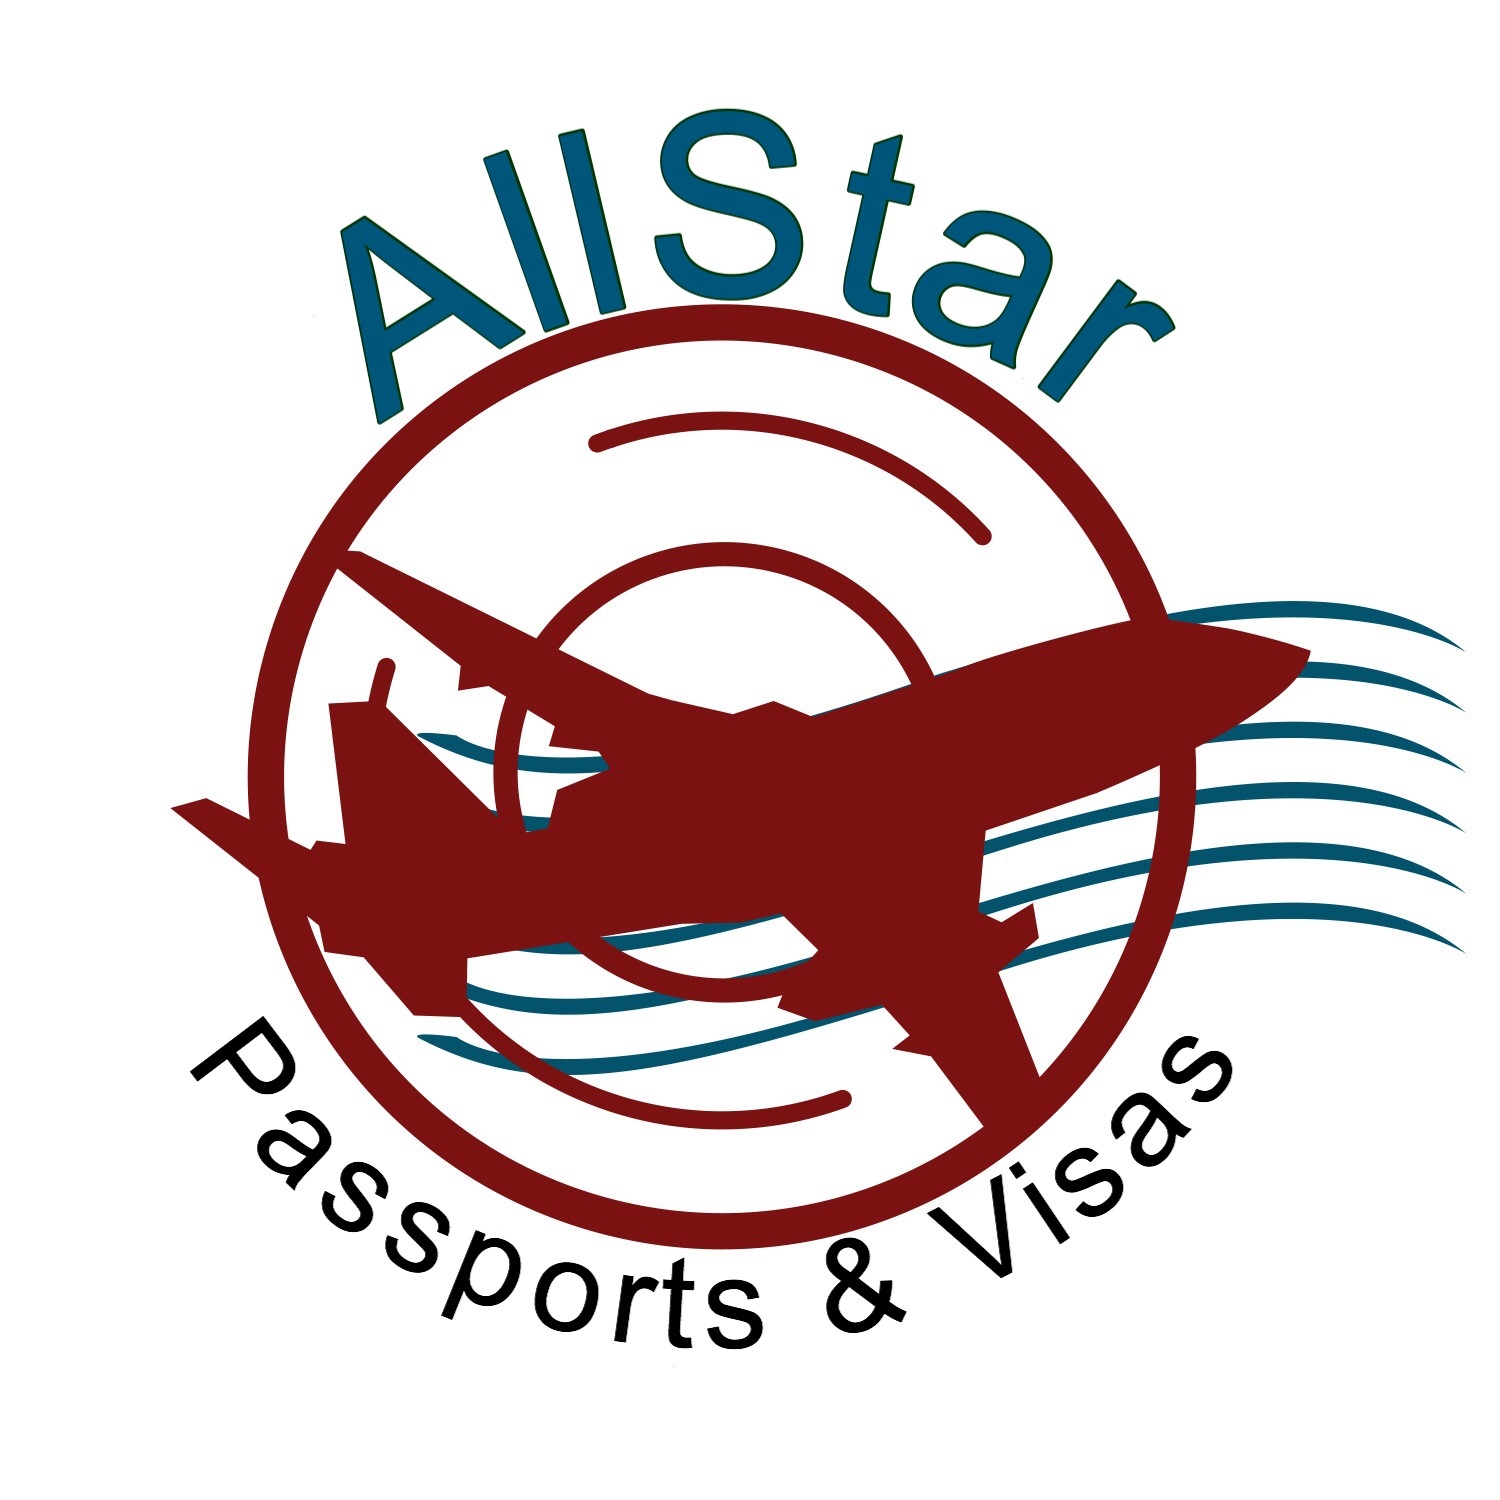 AllStar Passports & Visas